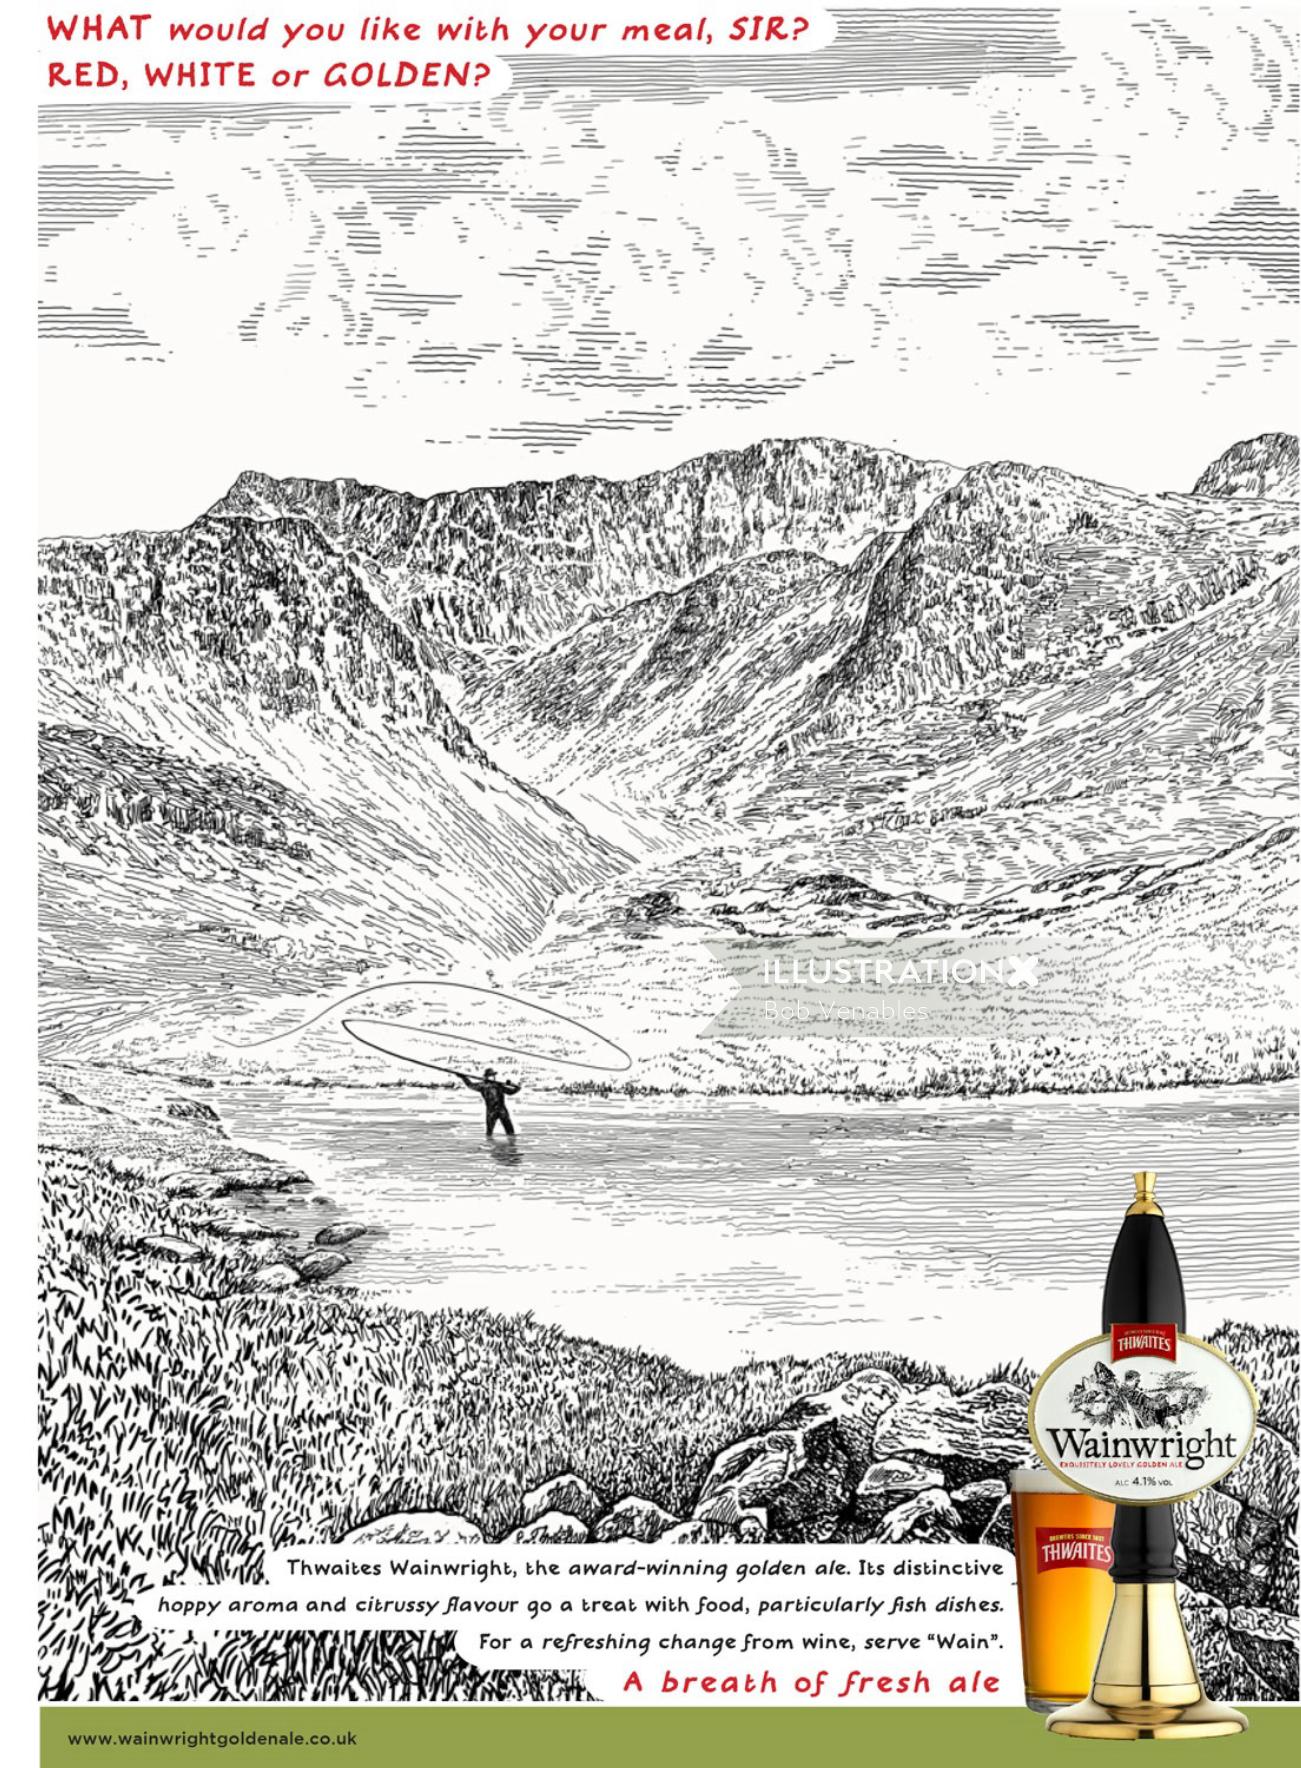 Publicidade impressa da cerveja Wainwright